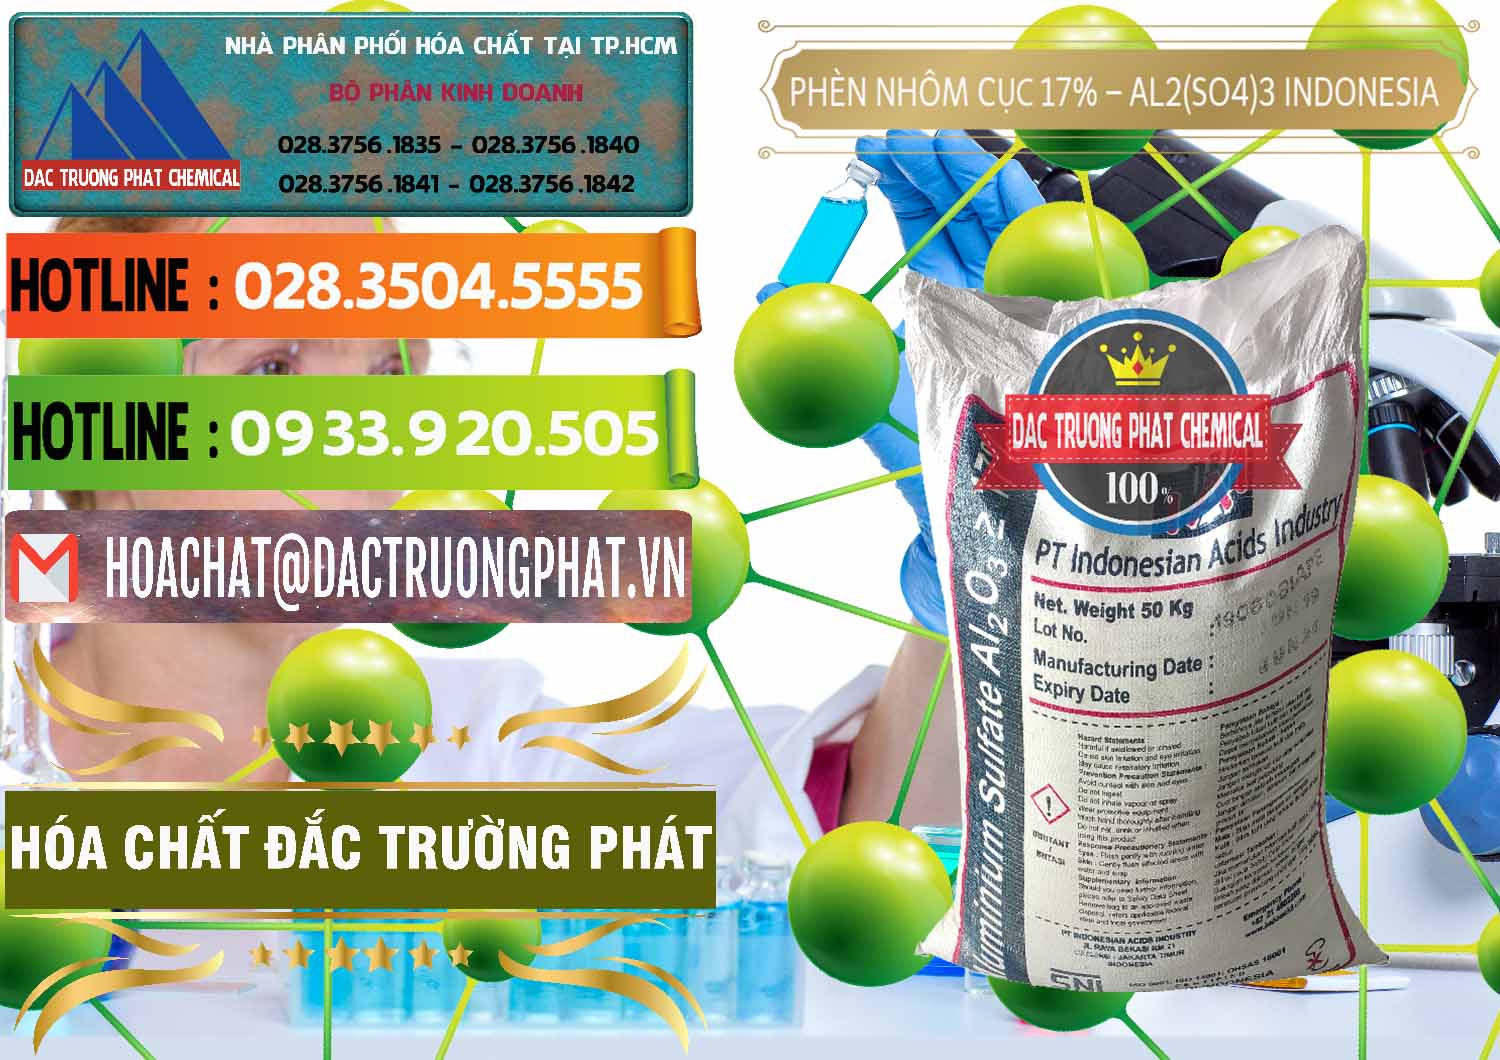 Cty kinh doanh & bán Phèn Nhôm Cục - Al2(SO4)3 17% bao 50kg Indonesia - 0113 - Cty kinh doanh _ phân phối hóa chất tại TP.HCM - cungcaphoachat.com.vn